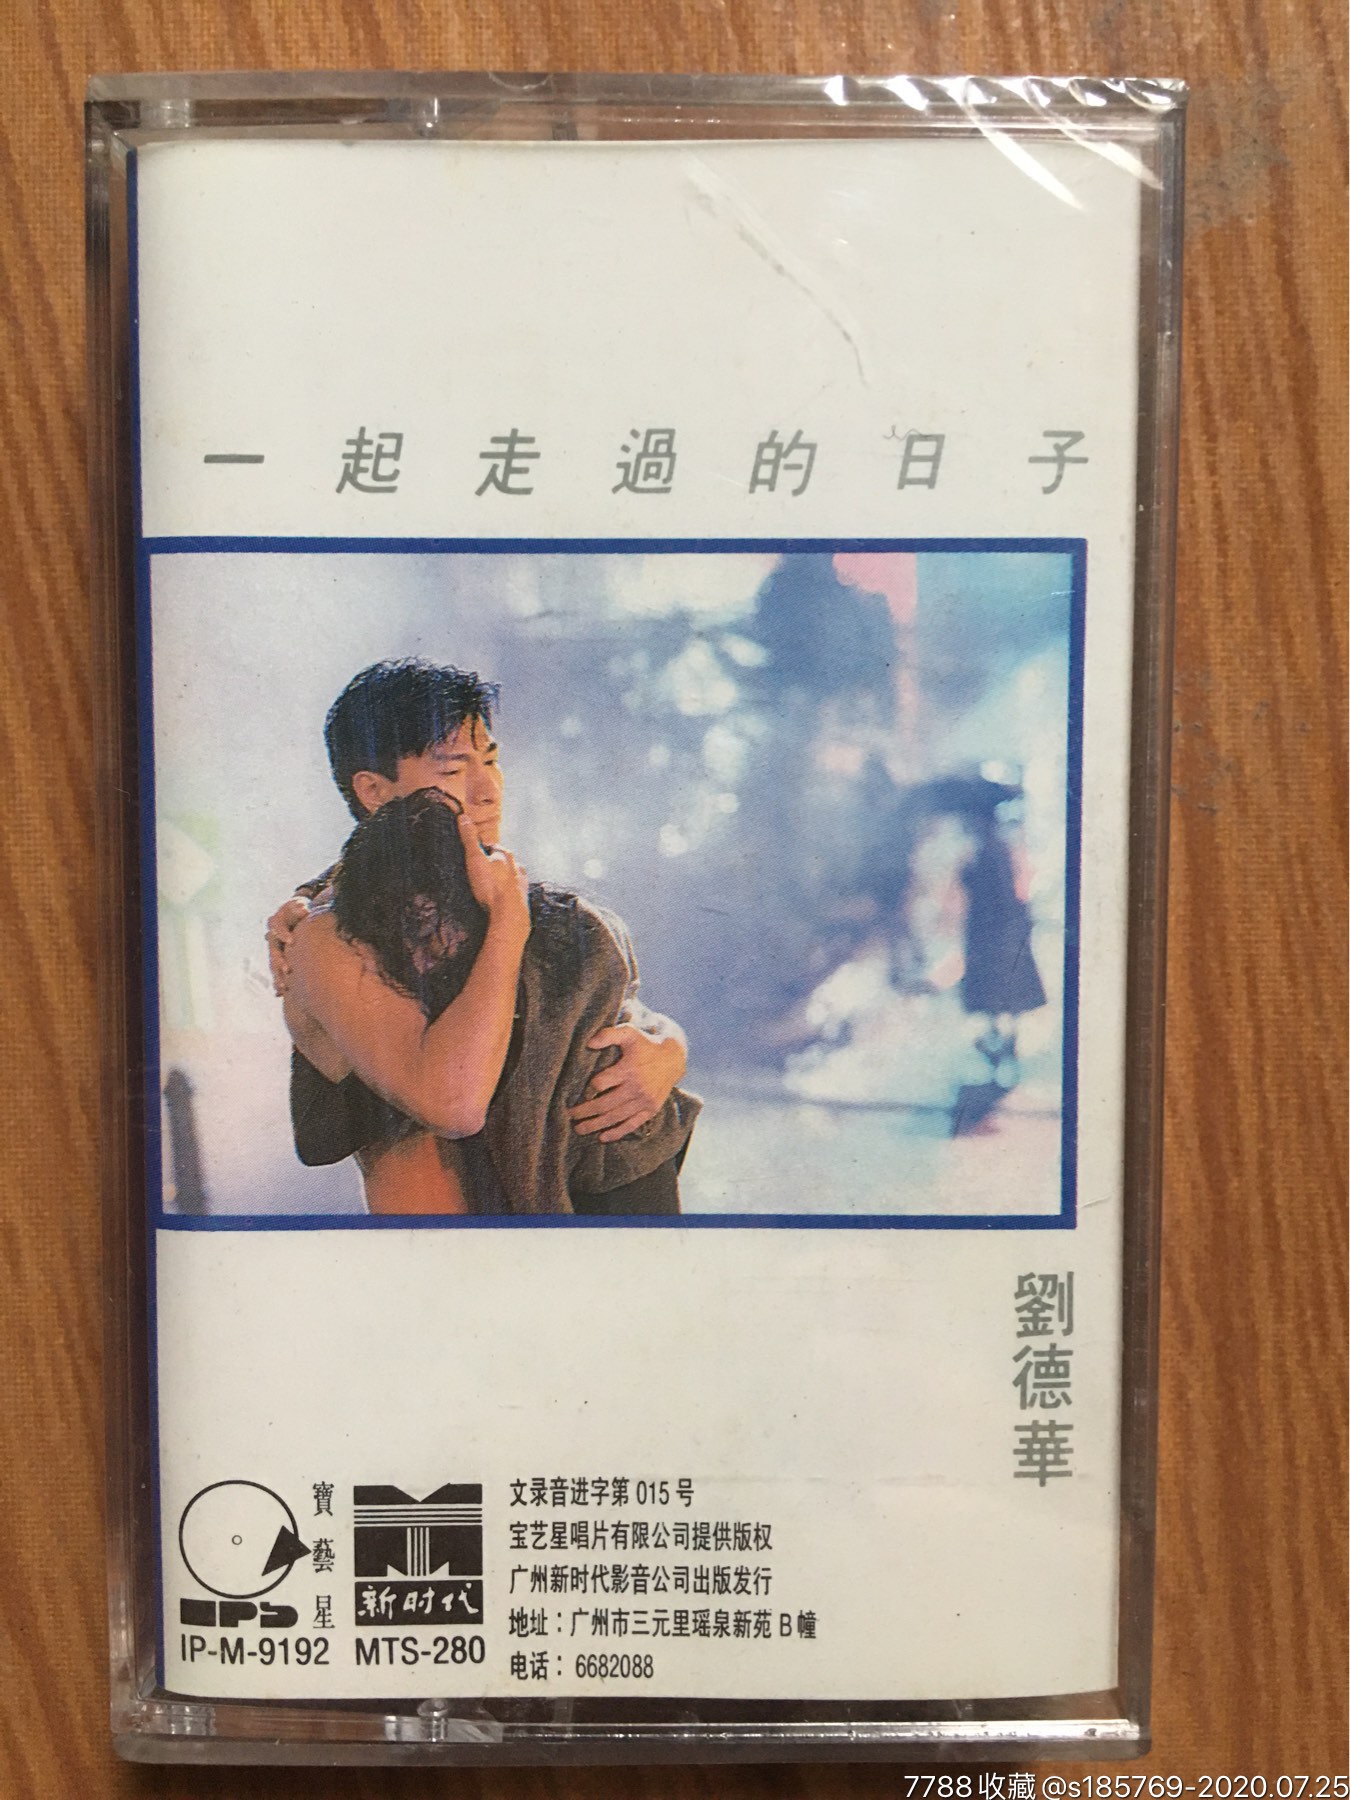 刘德华(一起走过的日子)专辑卡带磁带未拆封